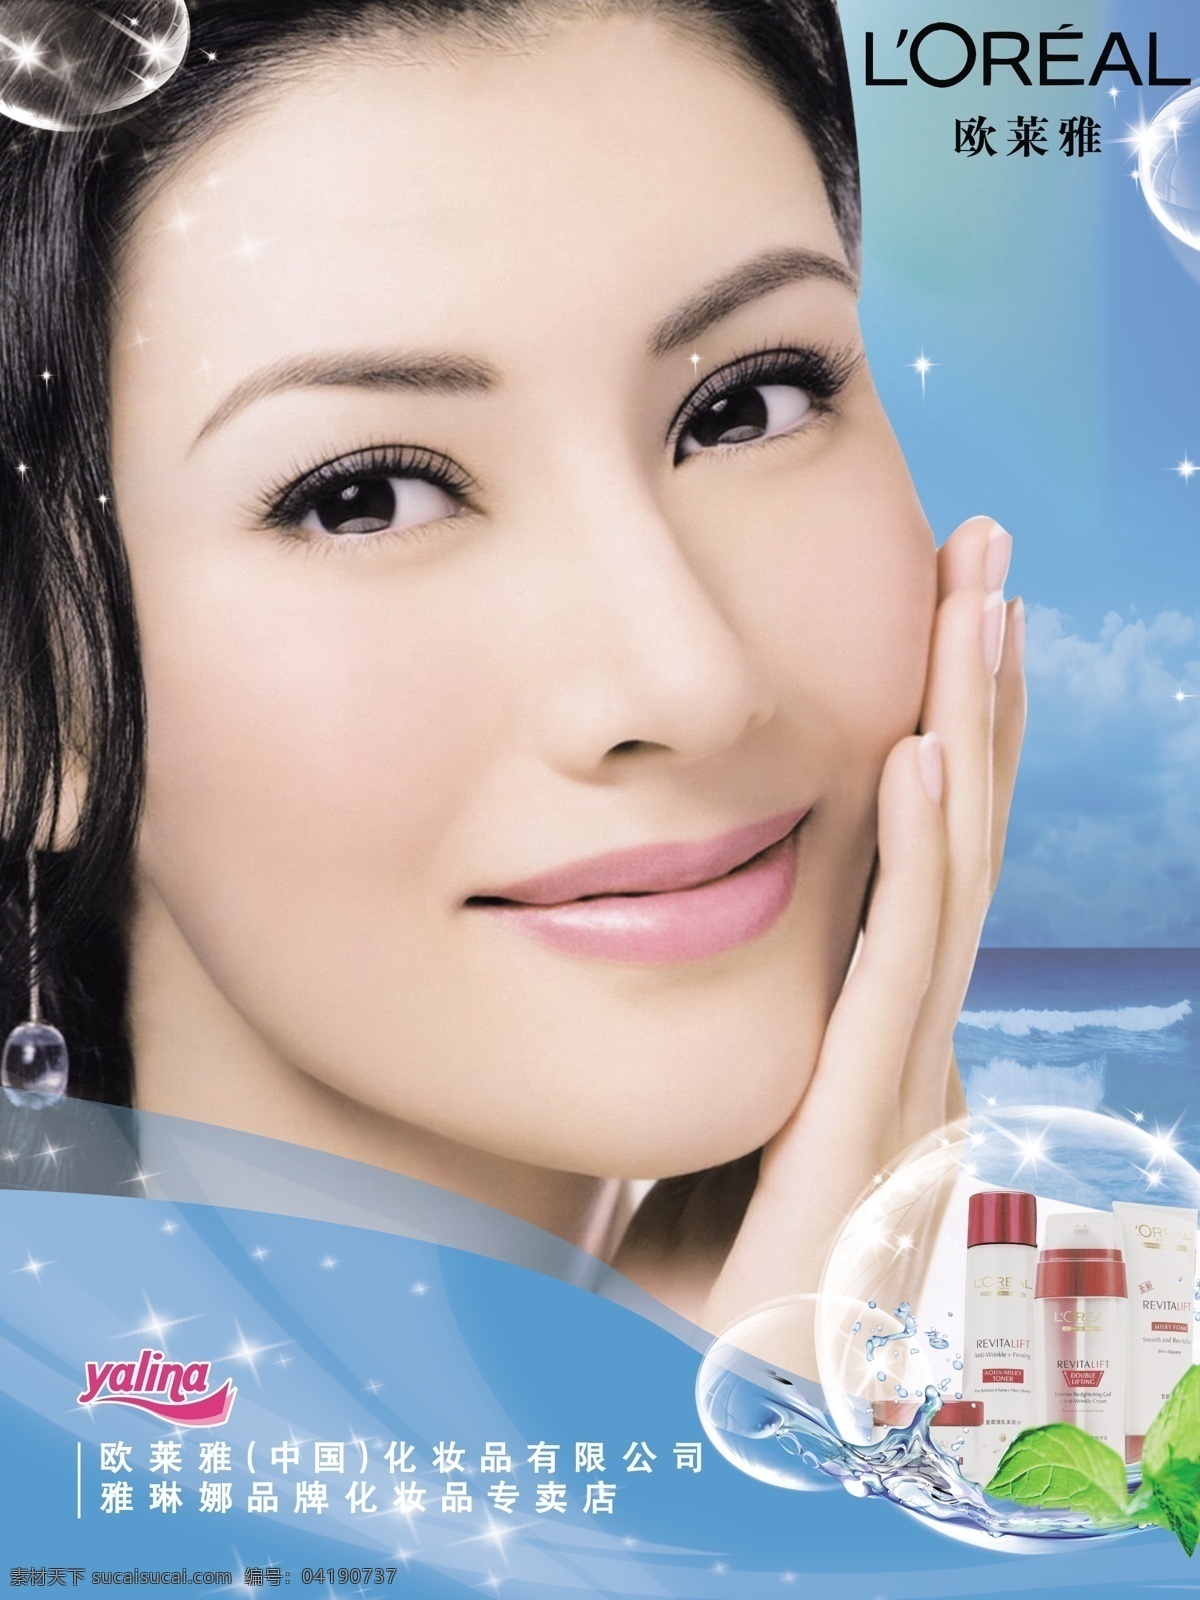 欧莱雅 欧莱雅标志 化妆品 美女 明星 李嘉欣 气泡 水珠 星光 广告设计模板 源文件